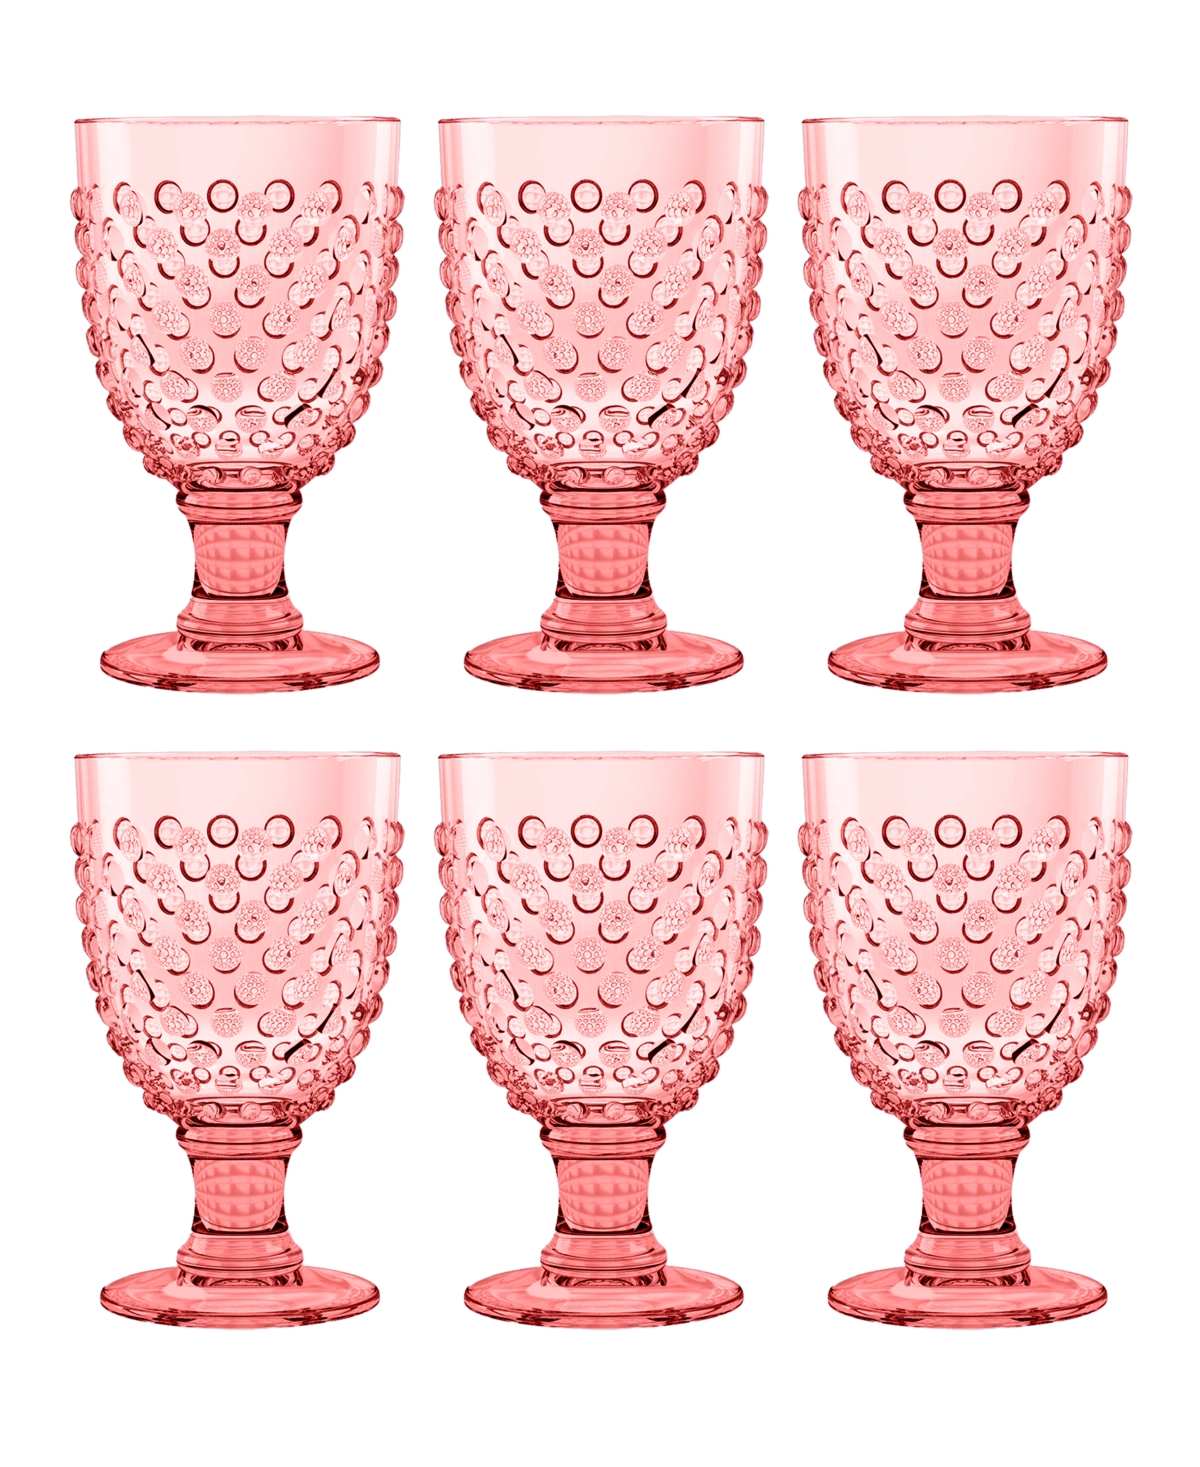 Tarhong Hobnail Goblet Set Of 6 In Pink